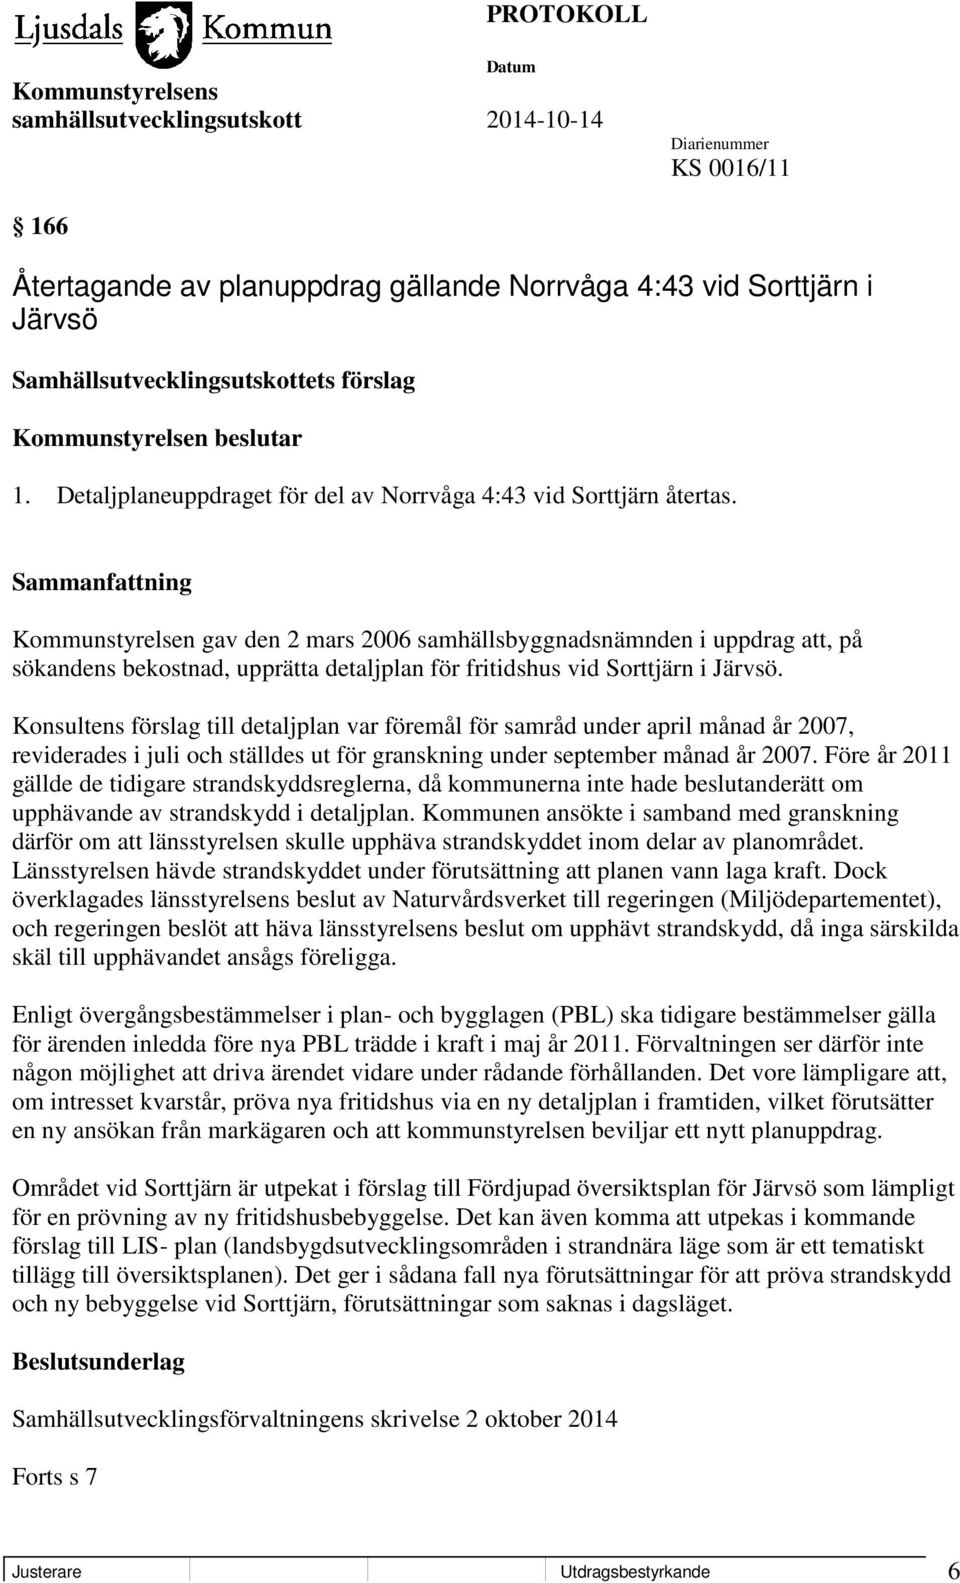 Kommunstyrelsen gav den 2 mars 2006 samhällsbyggnadsnämnden i uppdrag att, på sökandens bekostnad, upprätta detaljplan för fritidshus vid Sorttjärn i Järvsö.